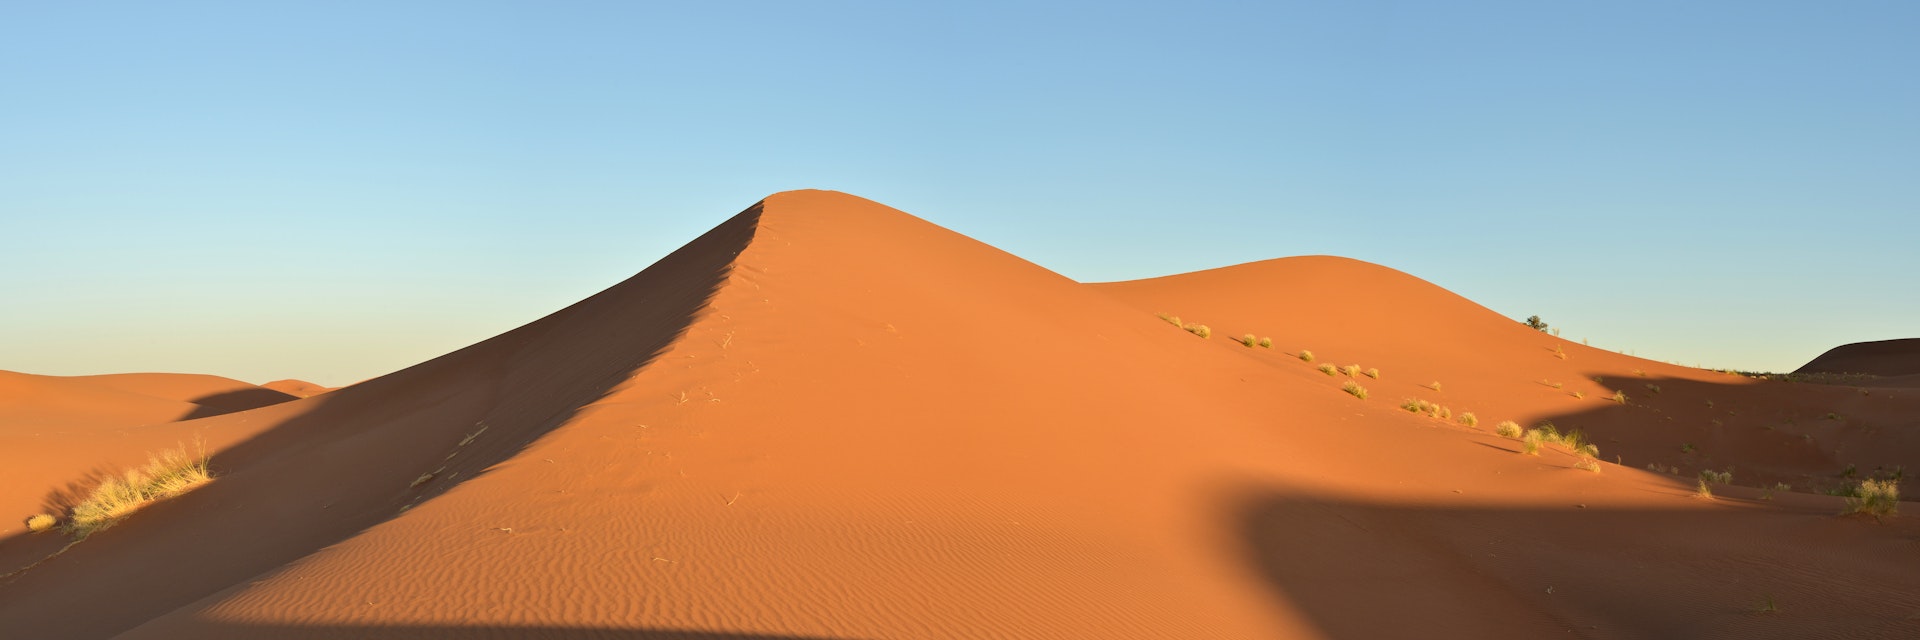 Dune at sunset, Sahara